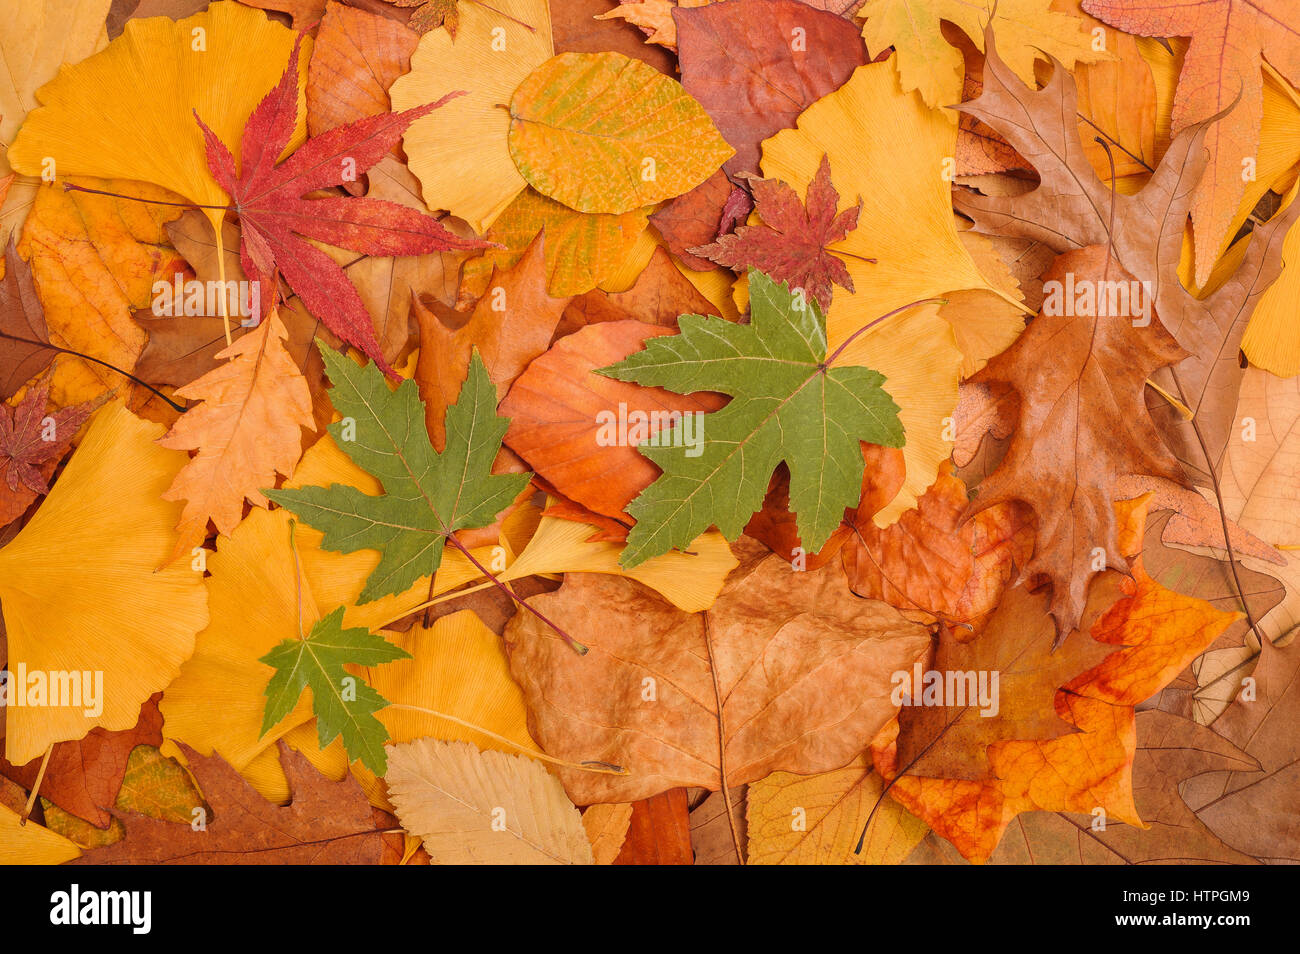 Hintergrund der gefallenen getrocknete Blätter im Herbst gemacht Stockfoto